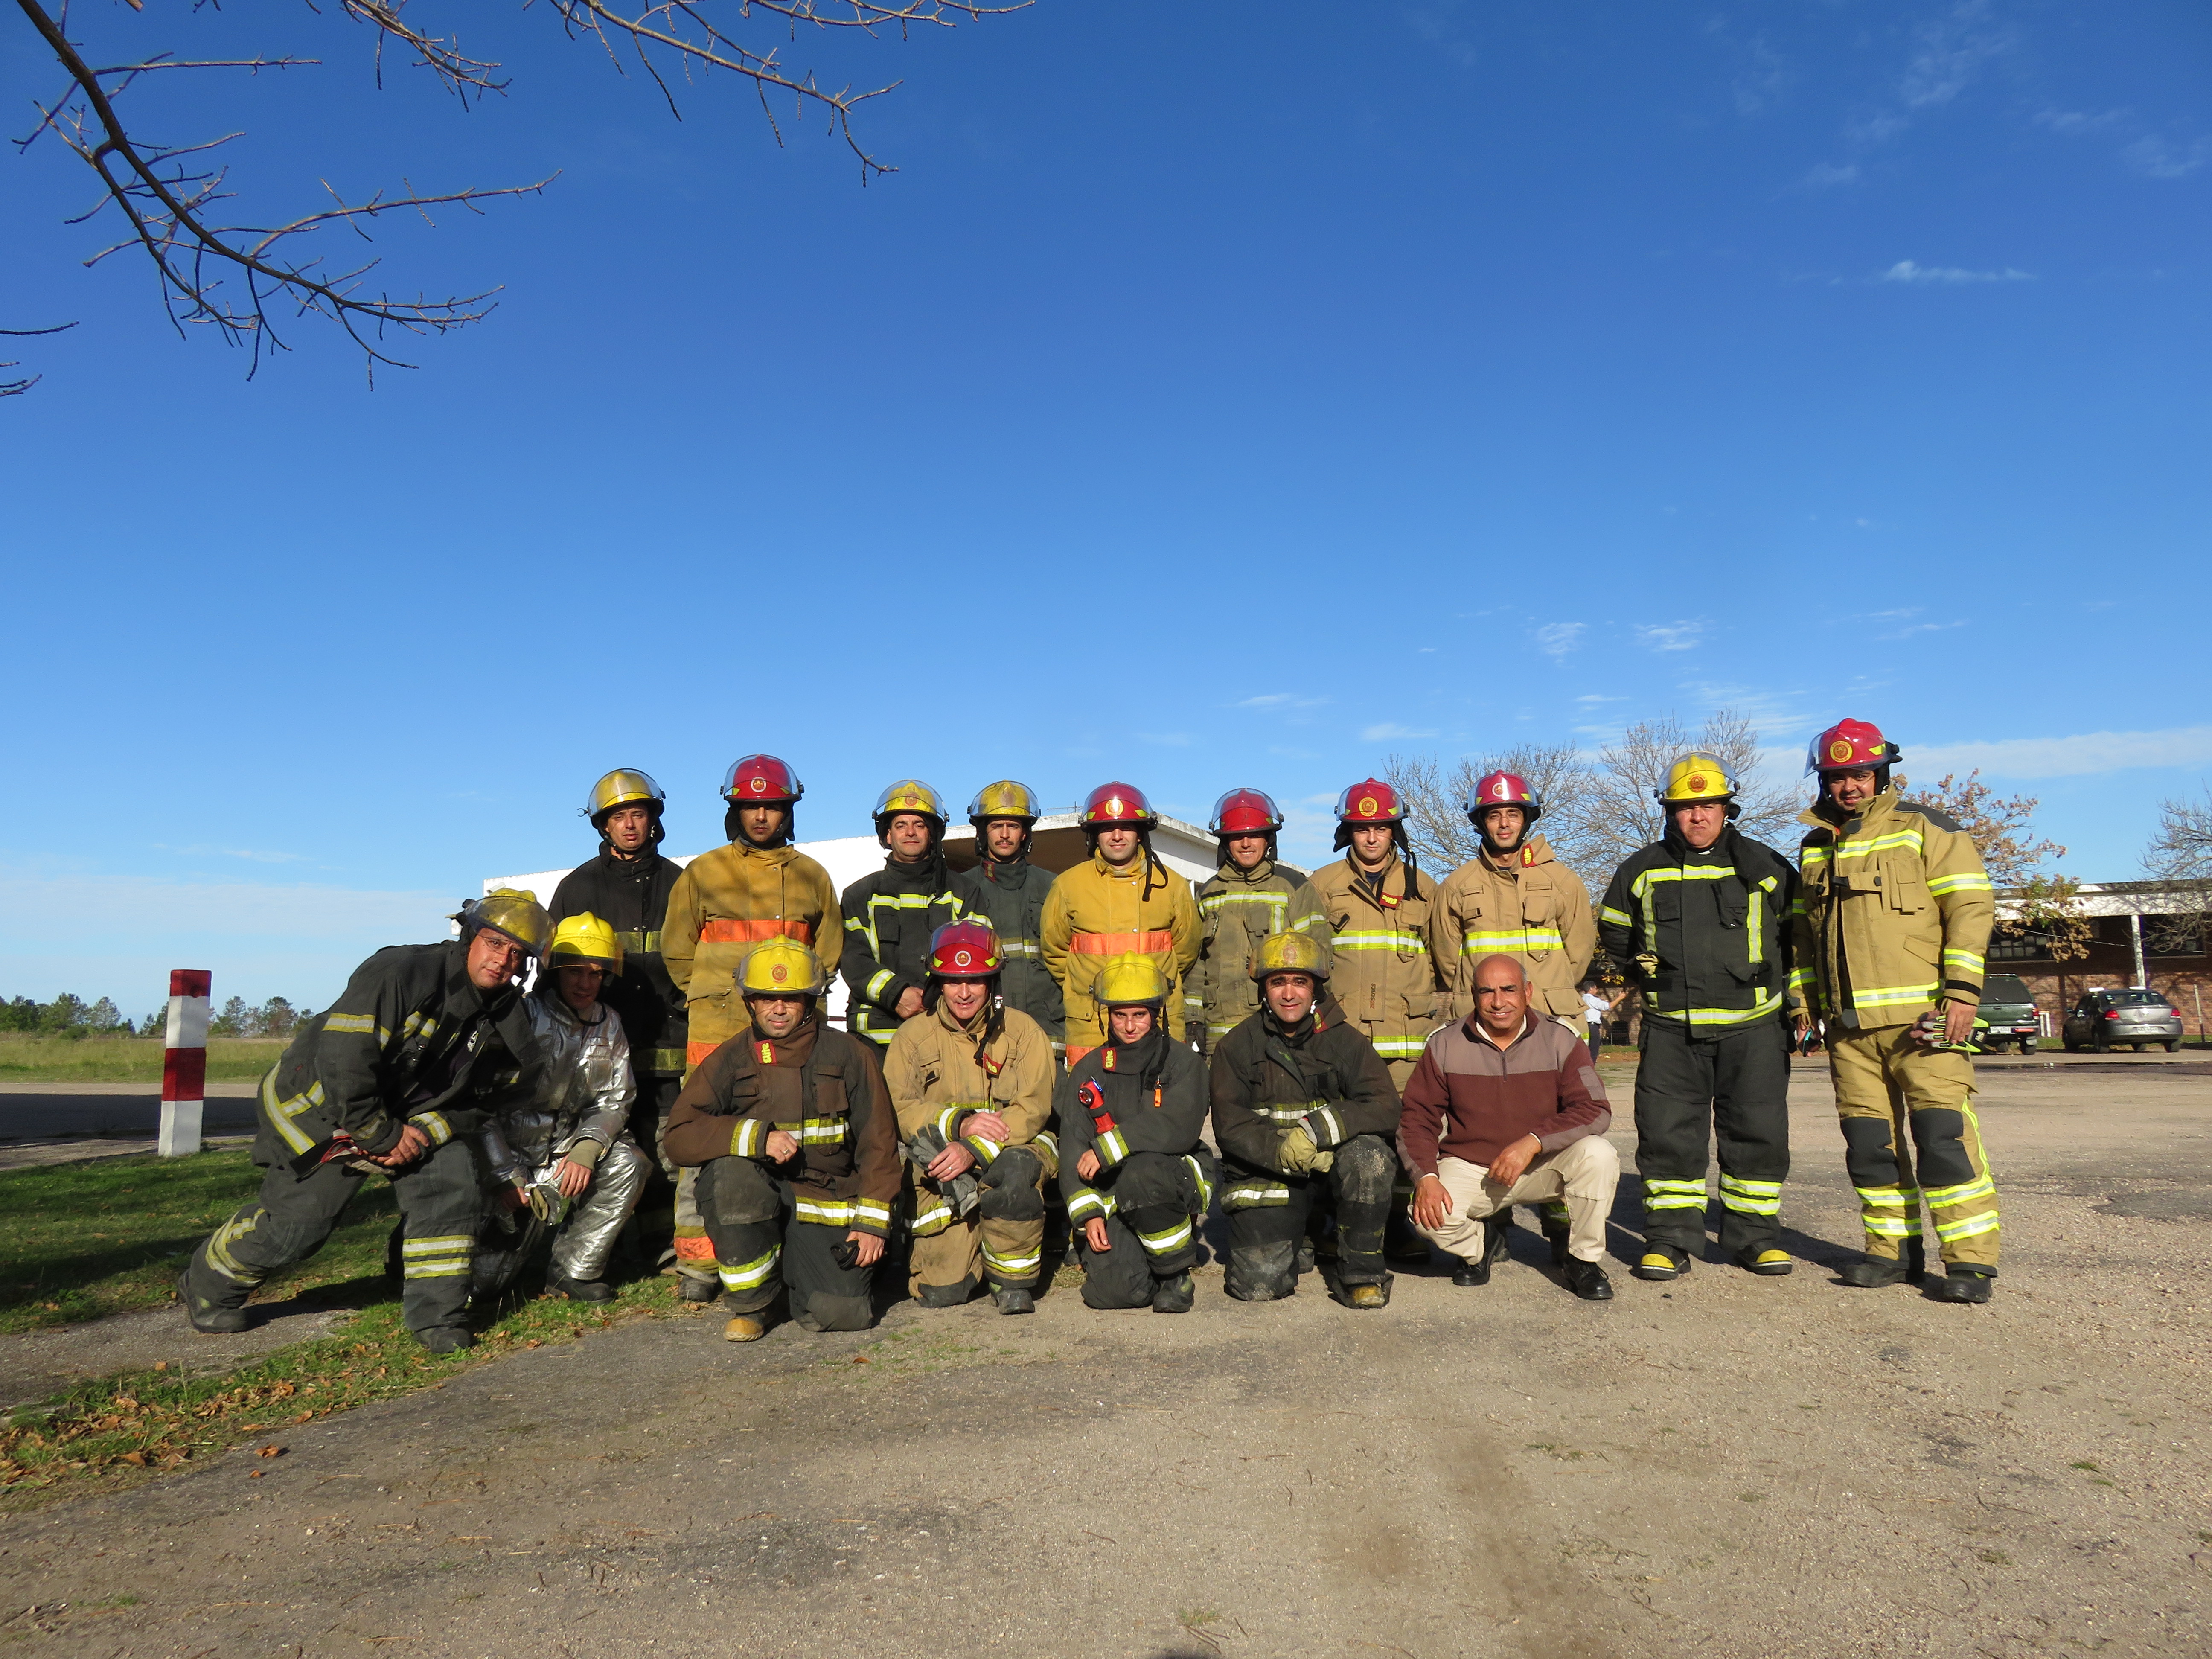 IMG_20230511_3923.jpg - El pasado jueves 11 de mayo culminó la &#034;Capacitación para bomberos sobre manejo de incidentes relacionados con la movilidad eléctrica&#034; en donde se capacitaron a 25 bomberos en la Base Aérea de Santa Bernardina del departamento de Durazno. Esta capacitación es la continuación del primer curso regional que organizó la plataforma MOVE del Programa de la Naciones Unidas para el Medio Ambiente a finales de 2022 en Paraguay, donde participaron y se formaron dos bomberos instructores de Uruguay.